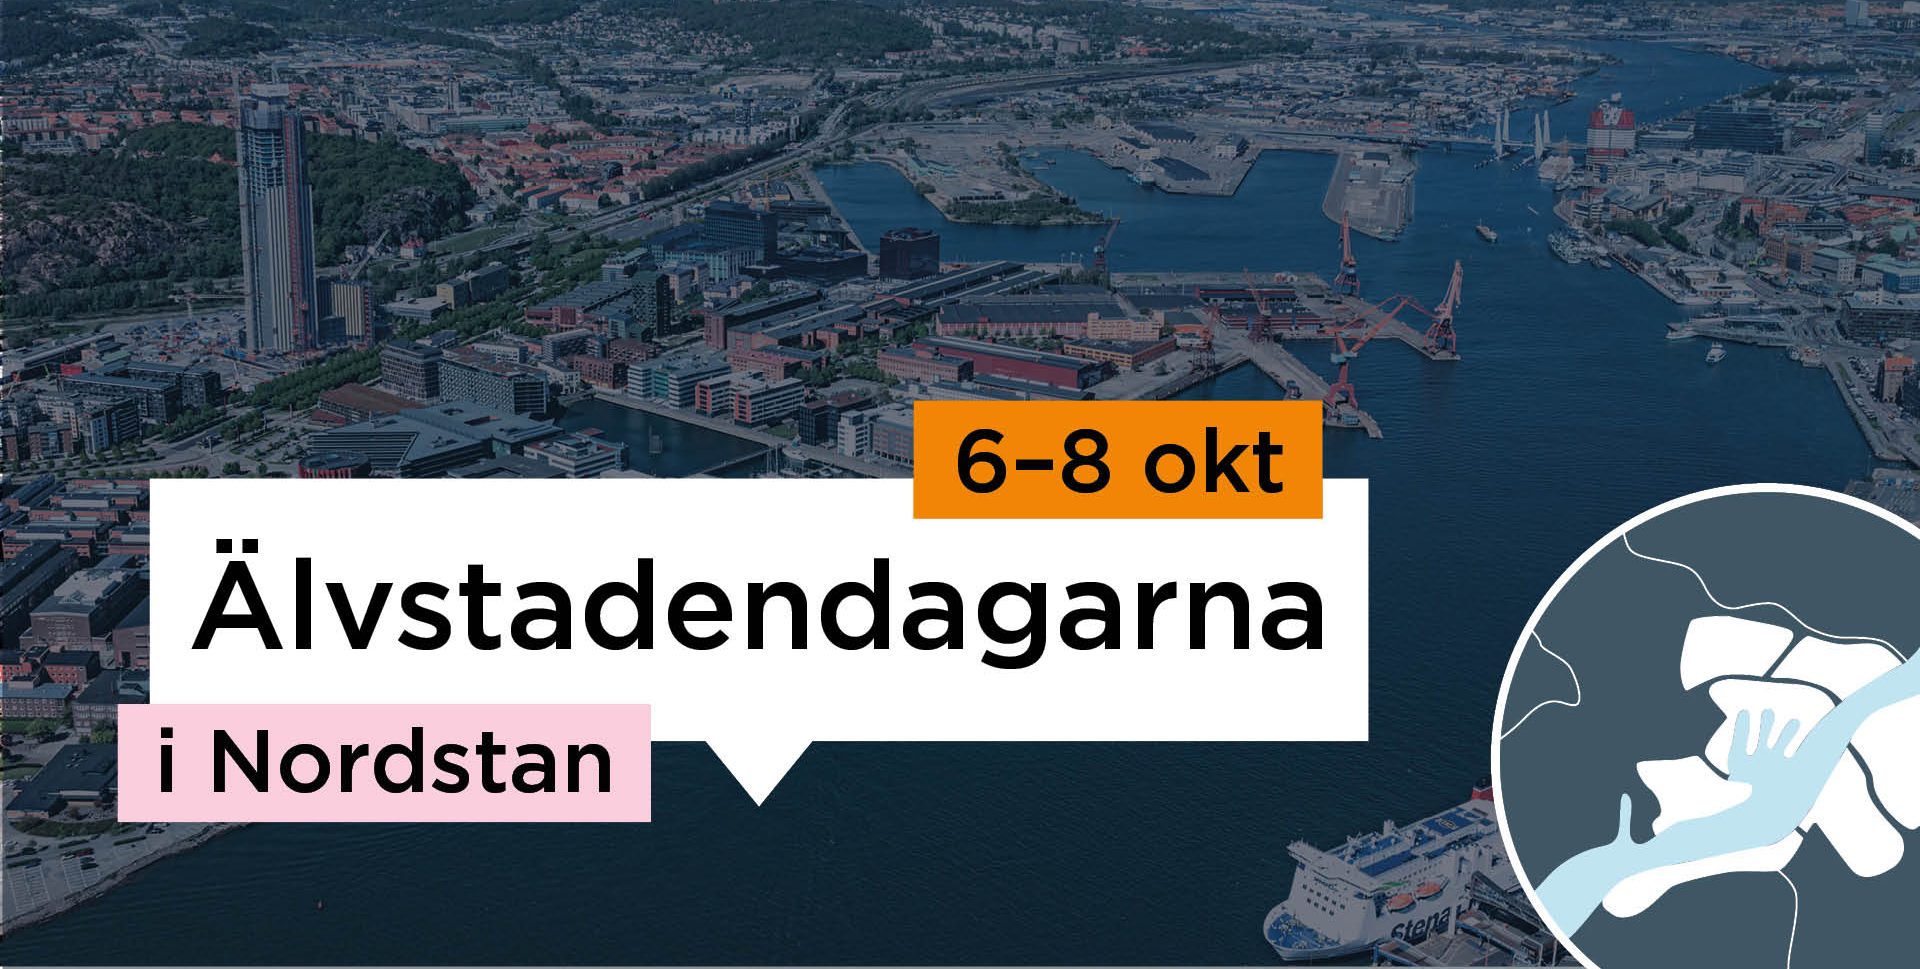 Vybild över Älvstaden med texten Älvstadendagarna 6-8 oktober i Nordstan.